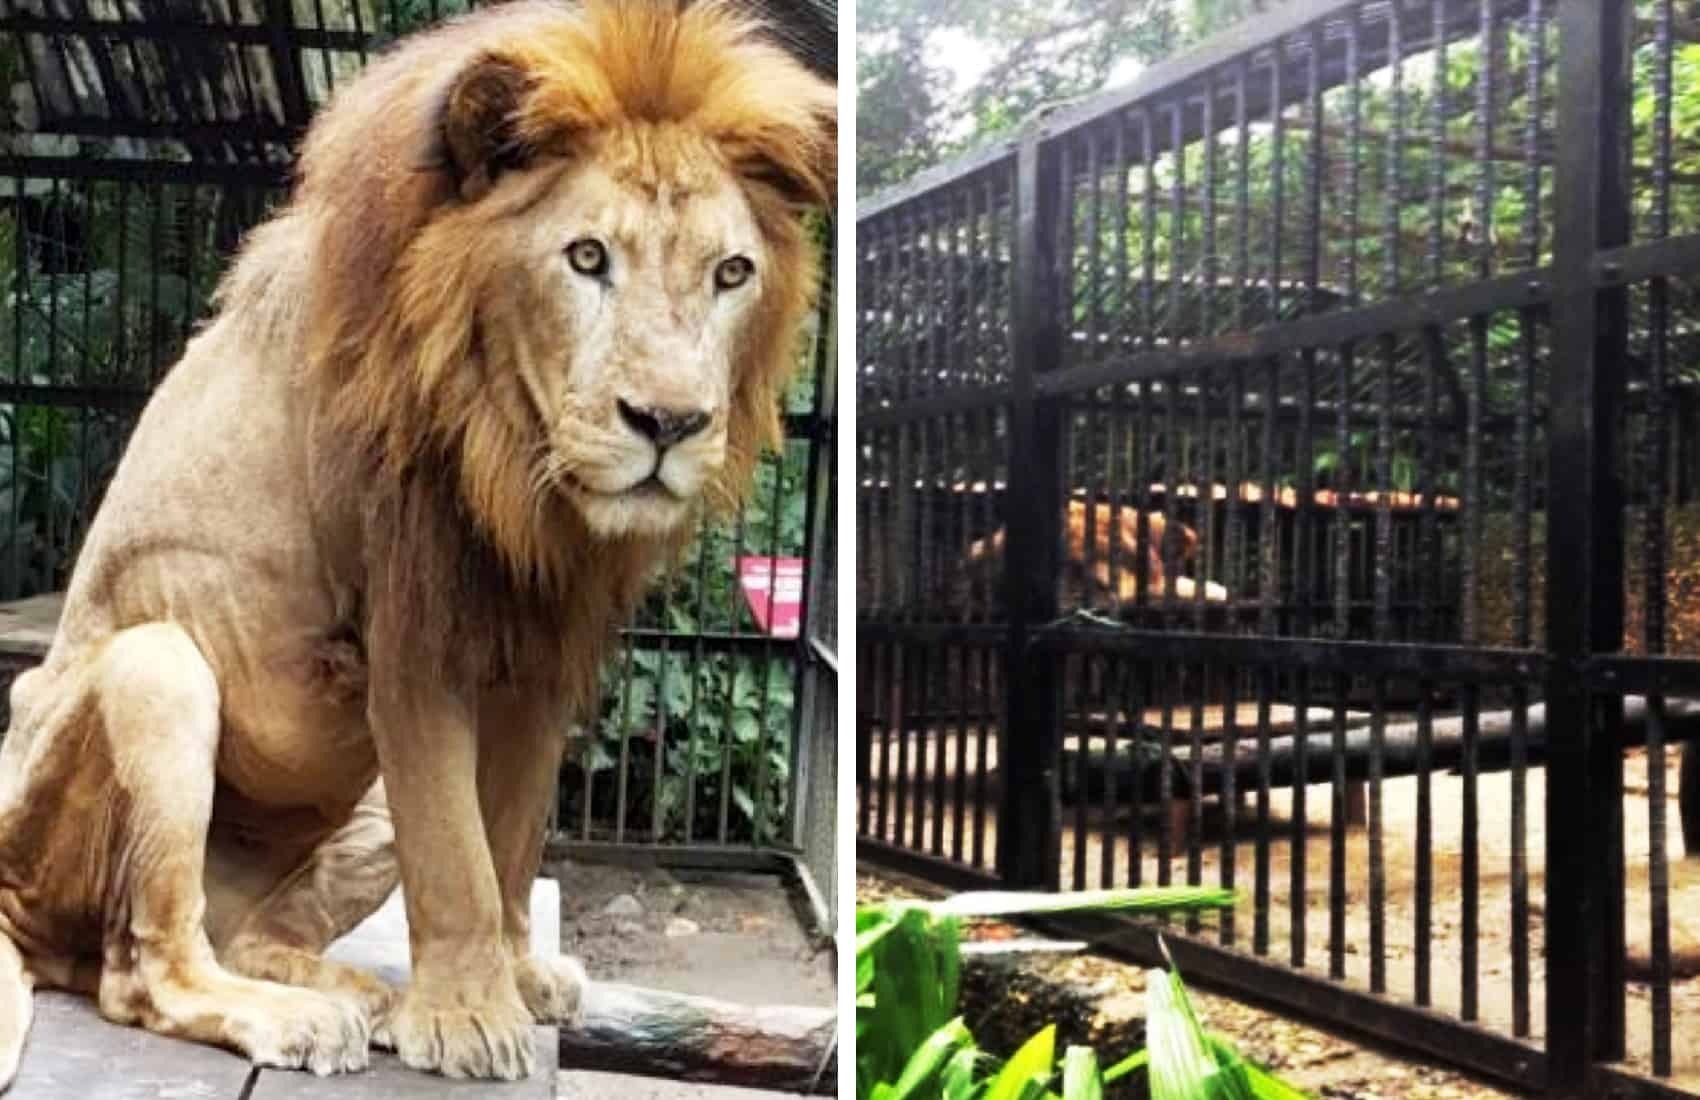 Kivú the Simón Bolívar zoo lion. July 26, 2016.